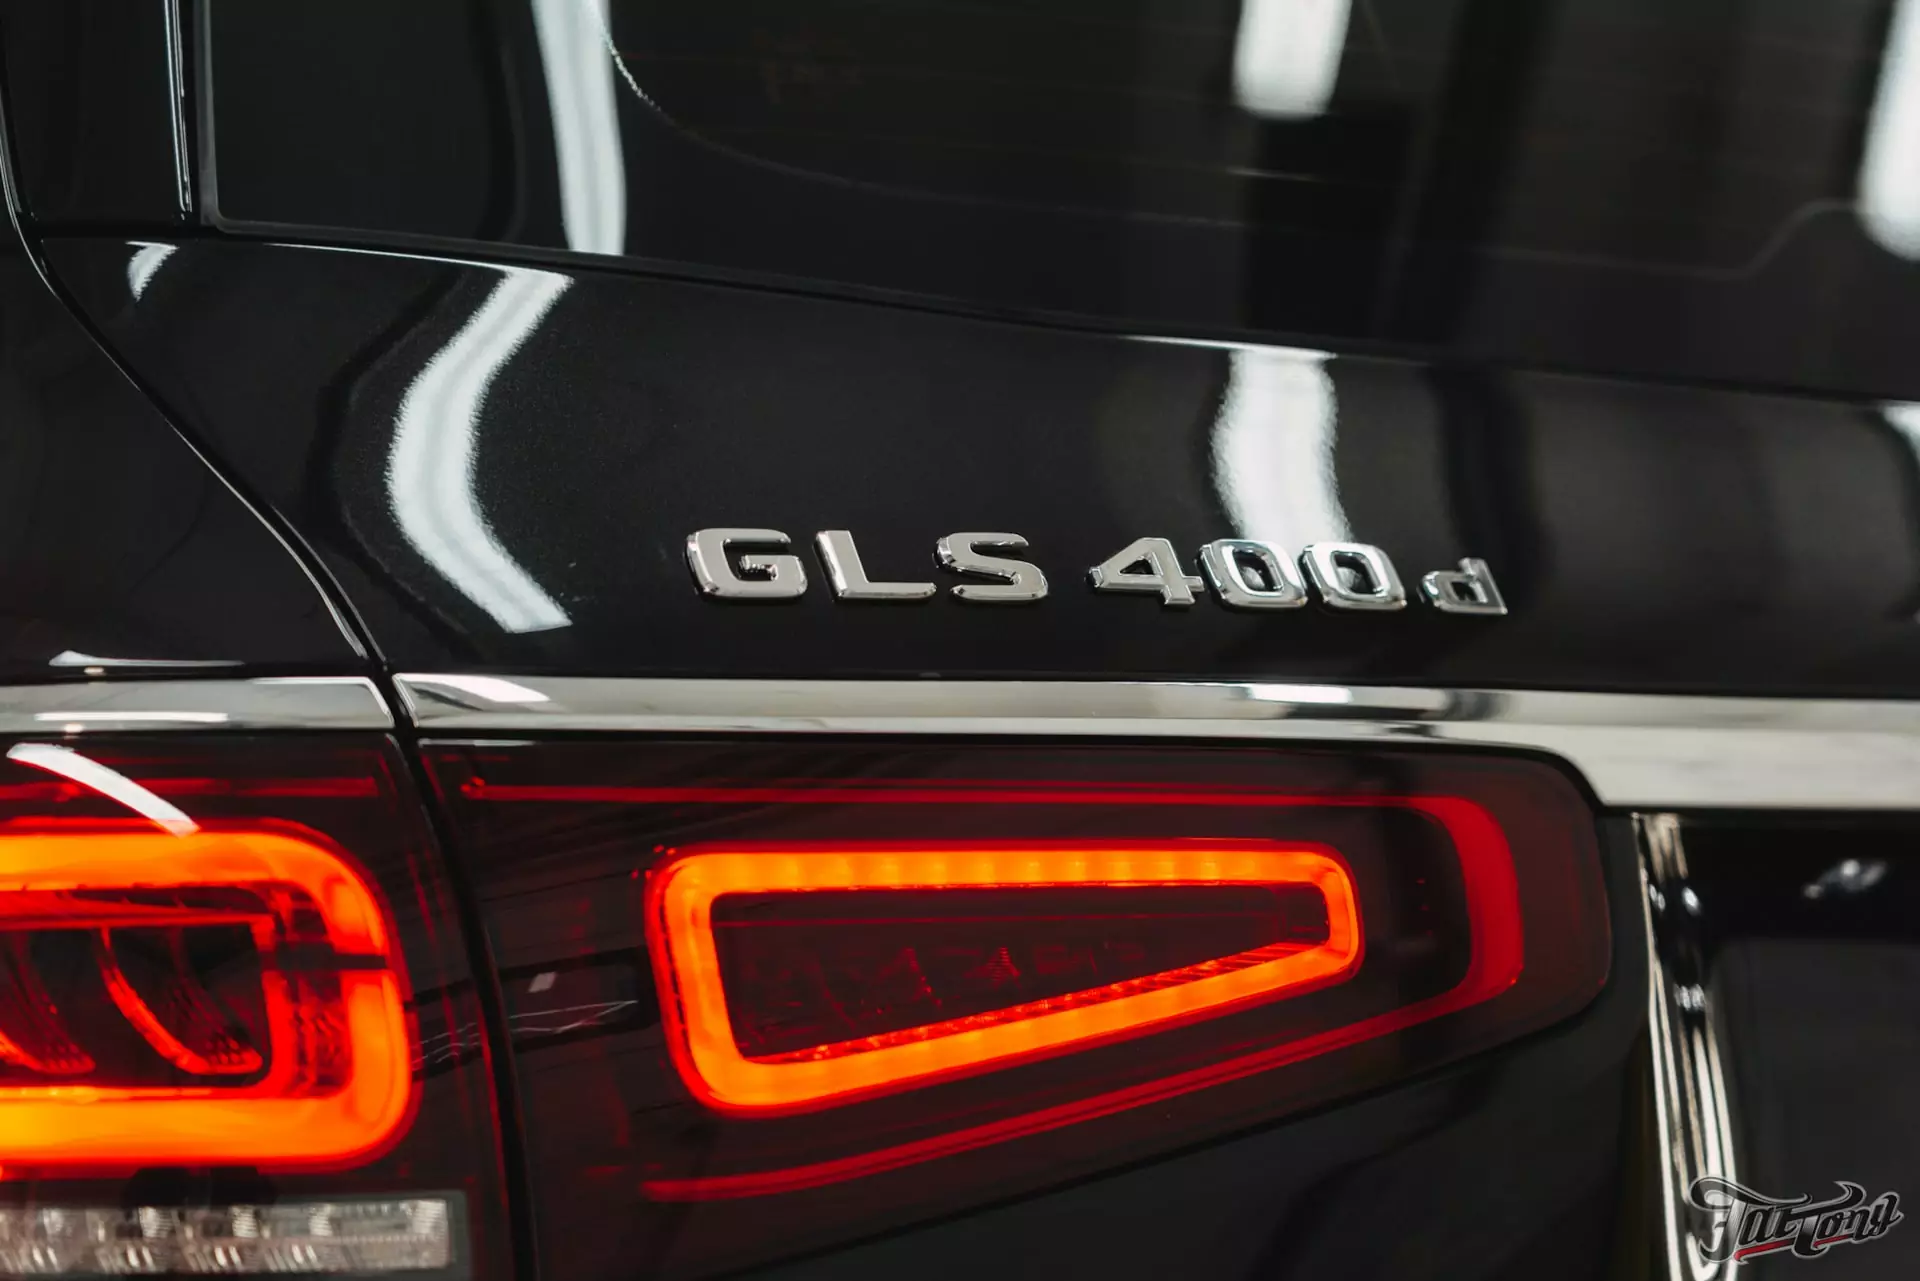 Mercedes GLS 400d. Антигравийная защита кузова глянцевым полиуретаном. Обработка экстерьера и интерьера керамикой.